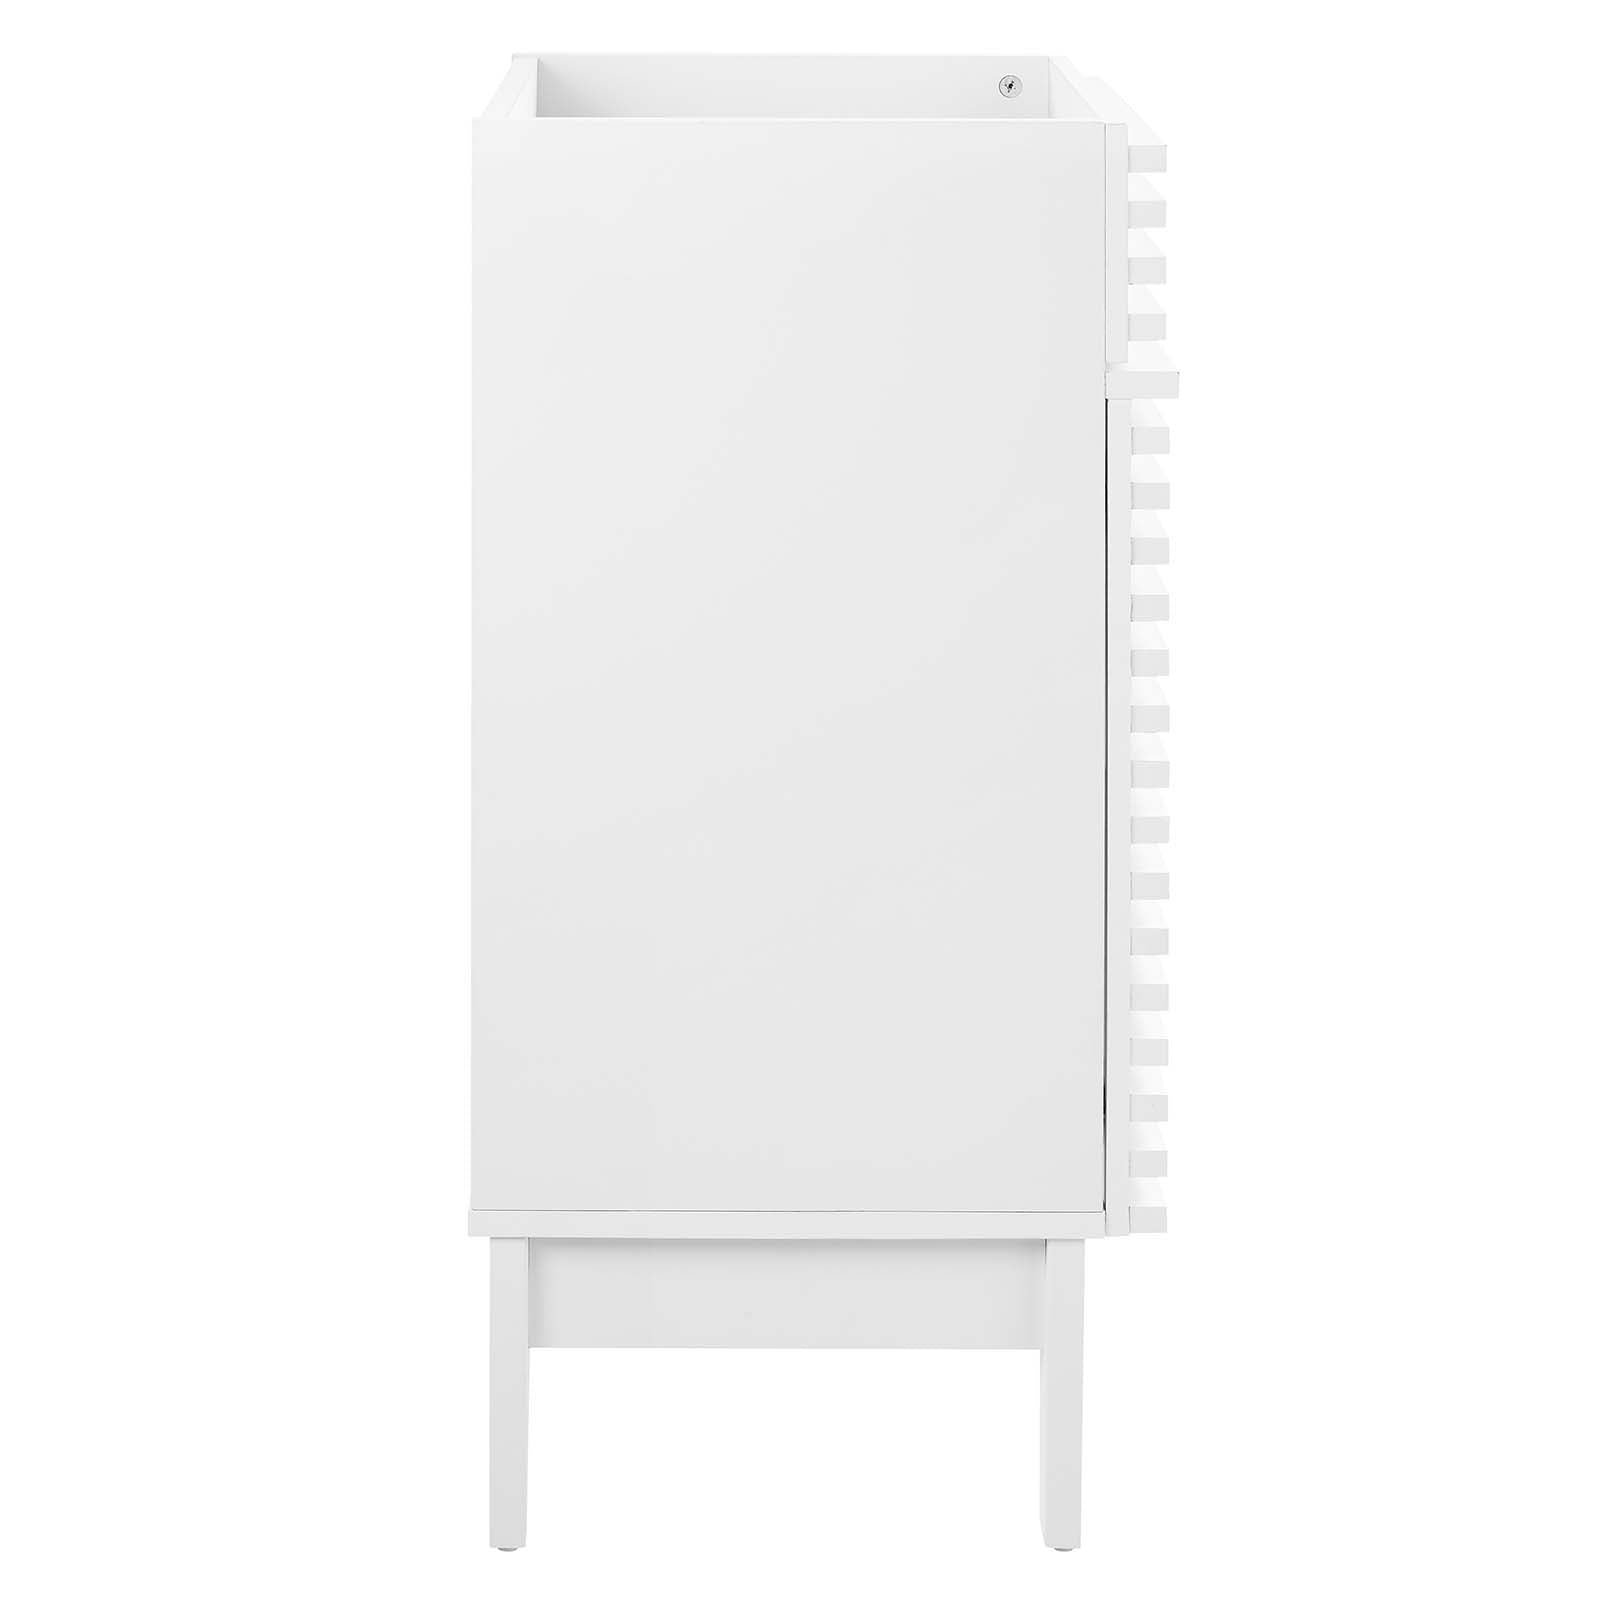 Modway Bathroom Vanity - Render 18" Bathroom Vanity Cabinet White